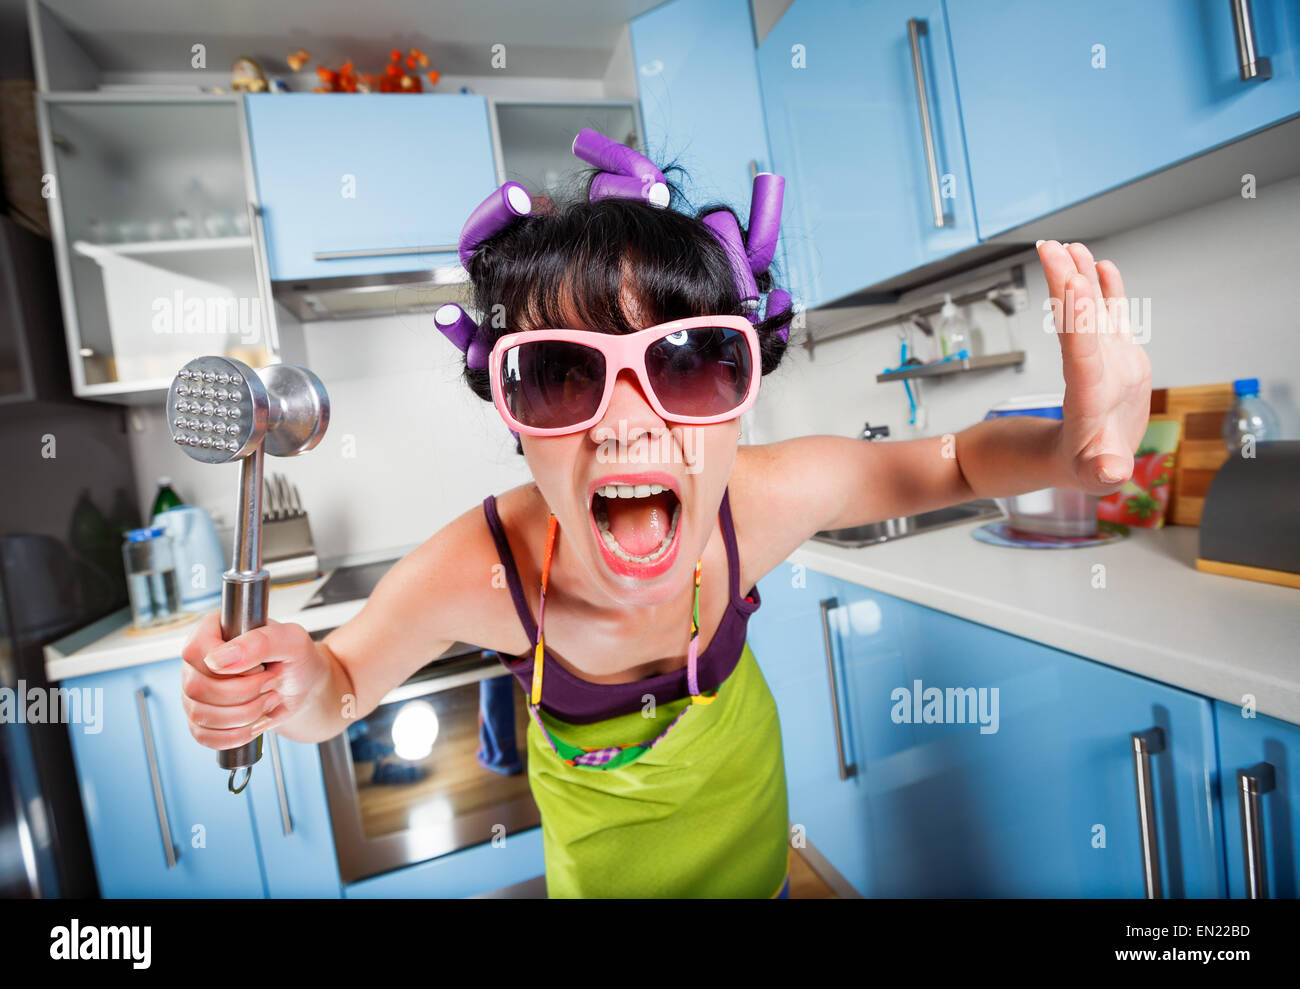 Crazy casalinga in un interno di cucina. Problemi familiari. Foto Stock